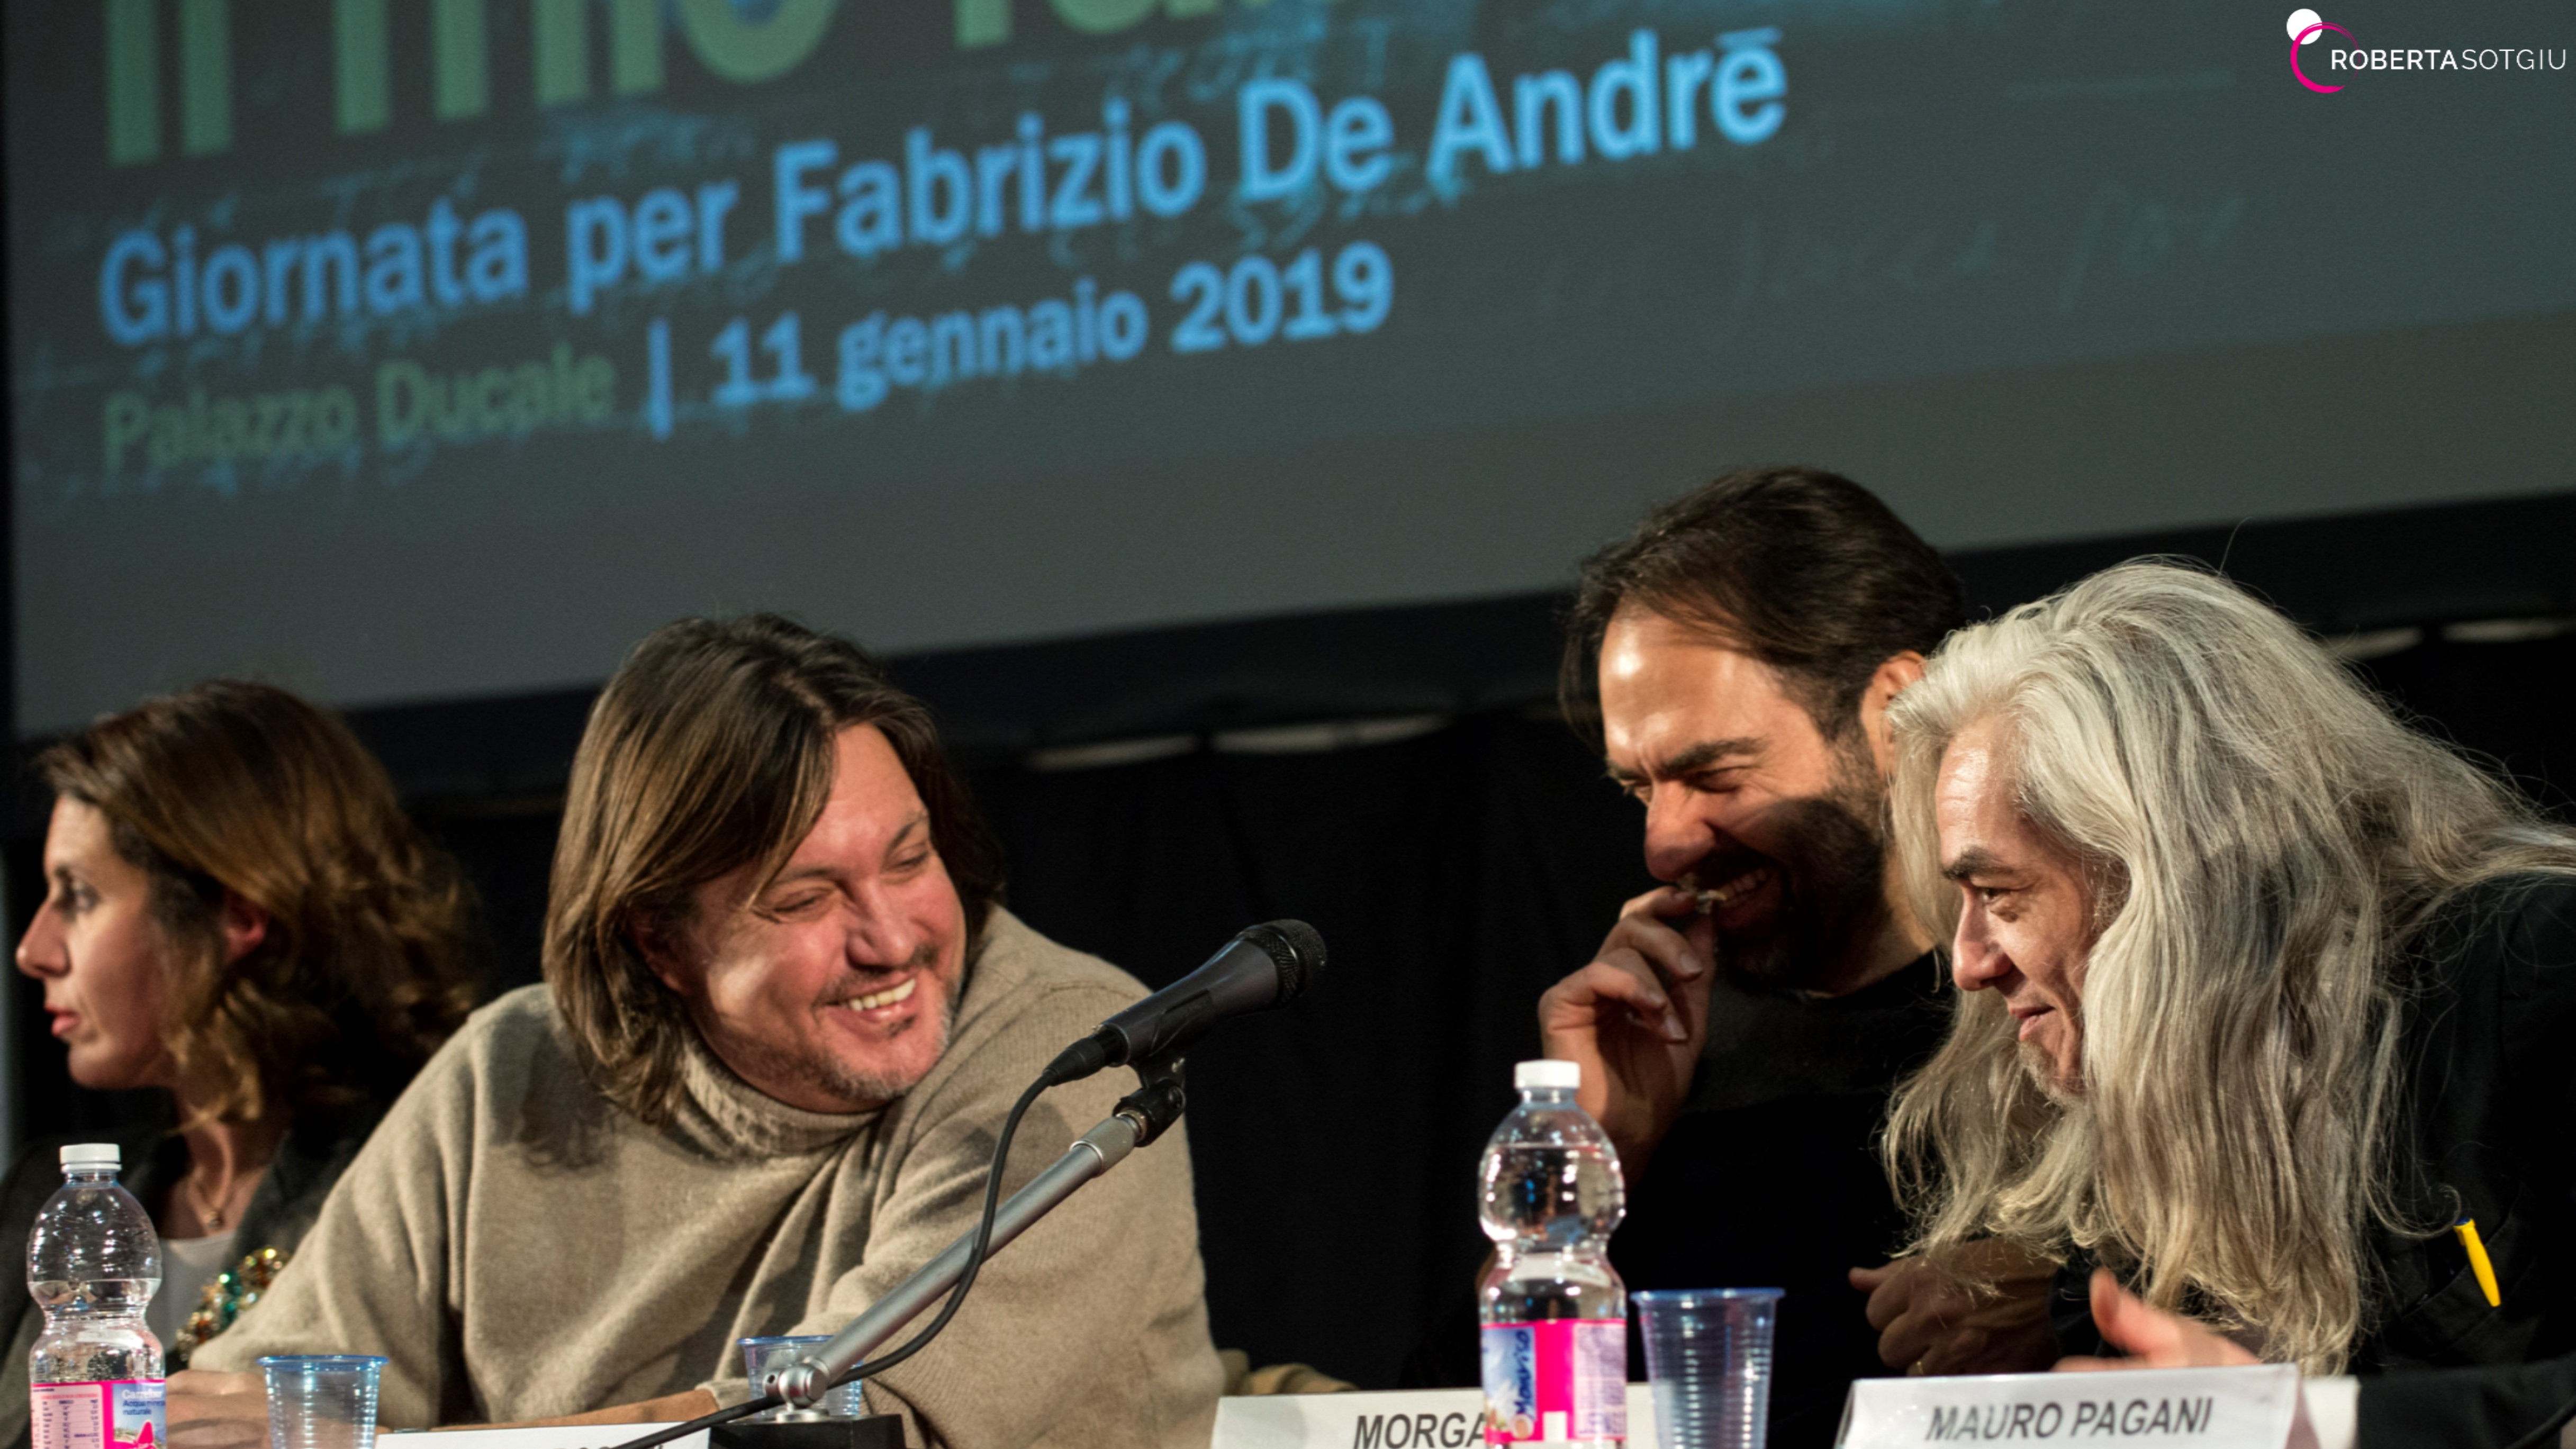 Il mio Fabrizio. Giornata per Fabrizio De André – 11 gennaio 2019 – Palazzo Ducale, Genova